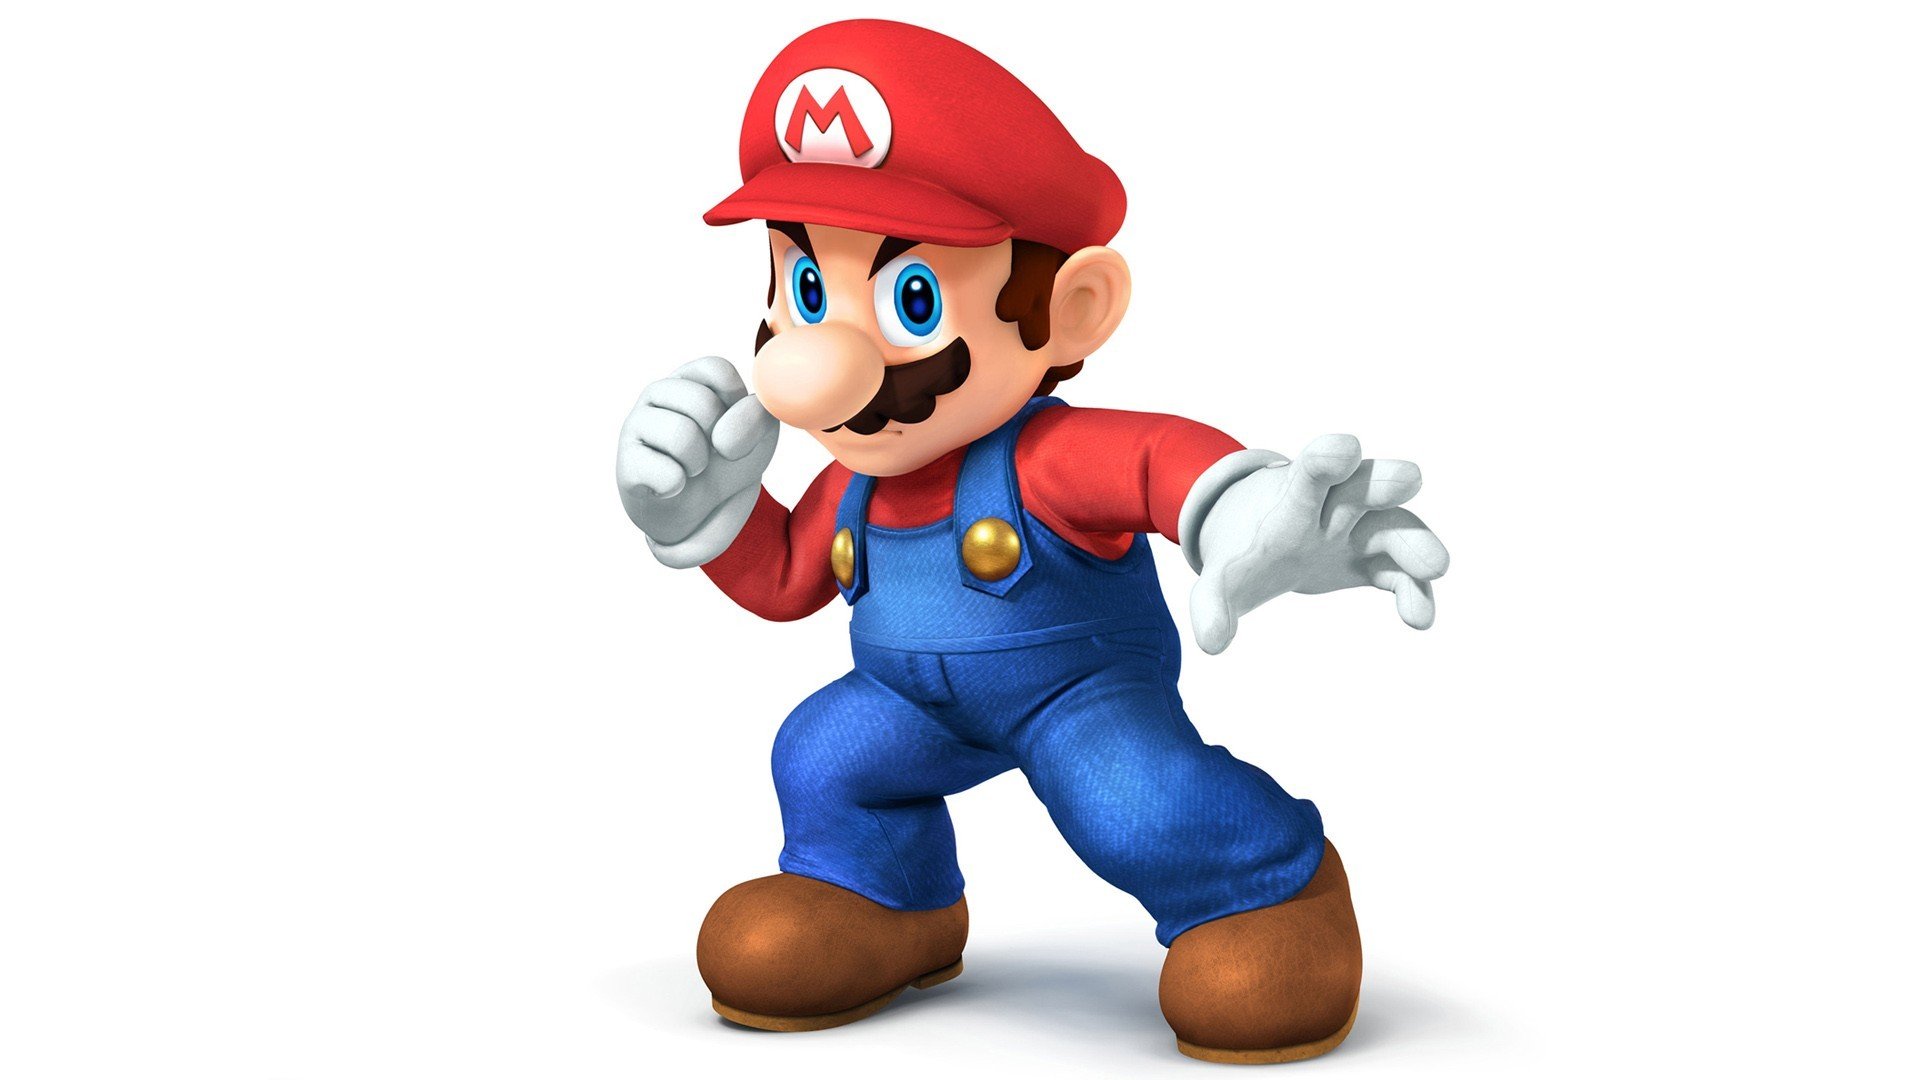 Mario bros 2023. Марио (персонаж игр). Супер Марио БРОС персонажи. Марио герой компьютерной игры. Марио из супер Марио БРОС.